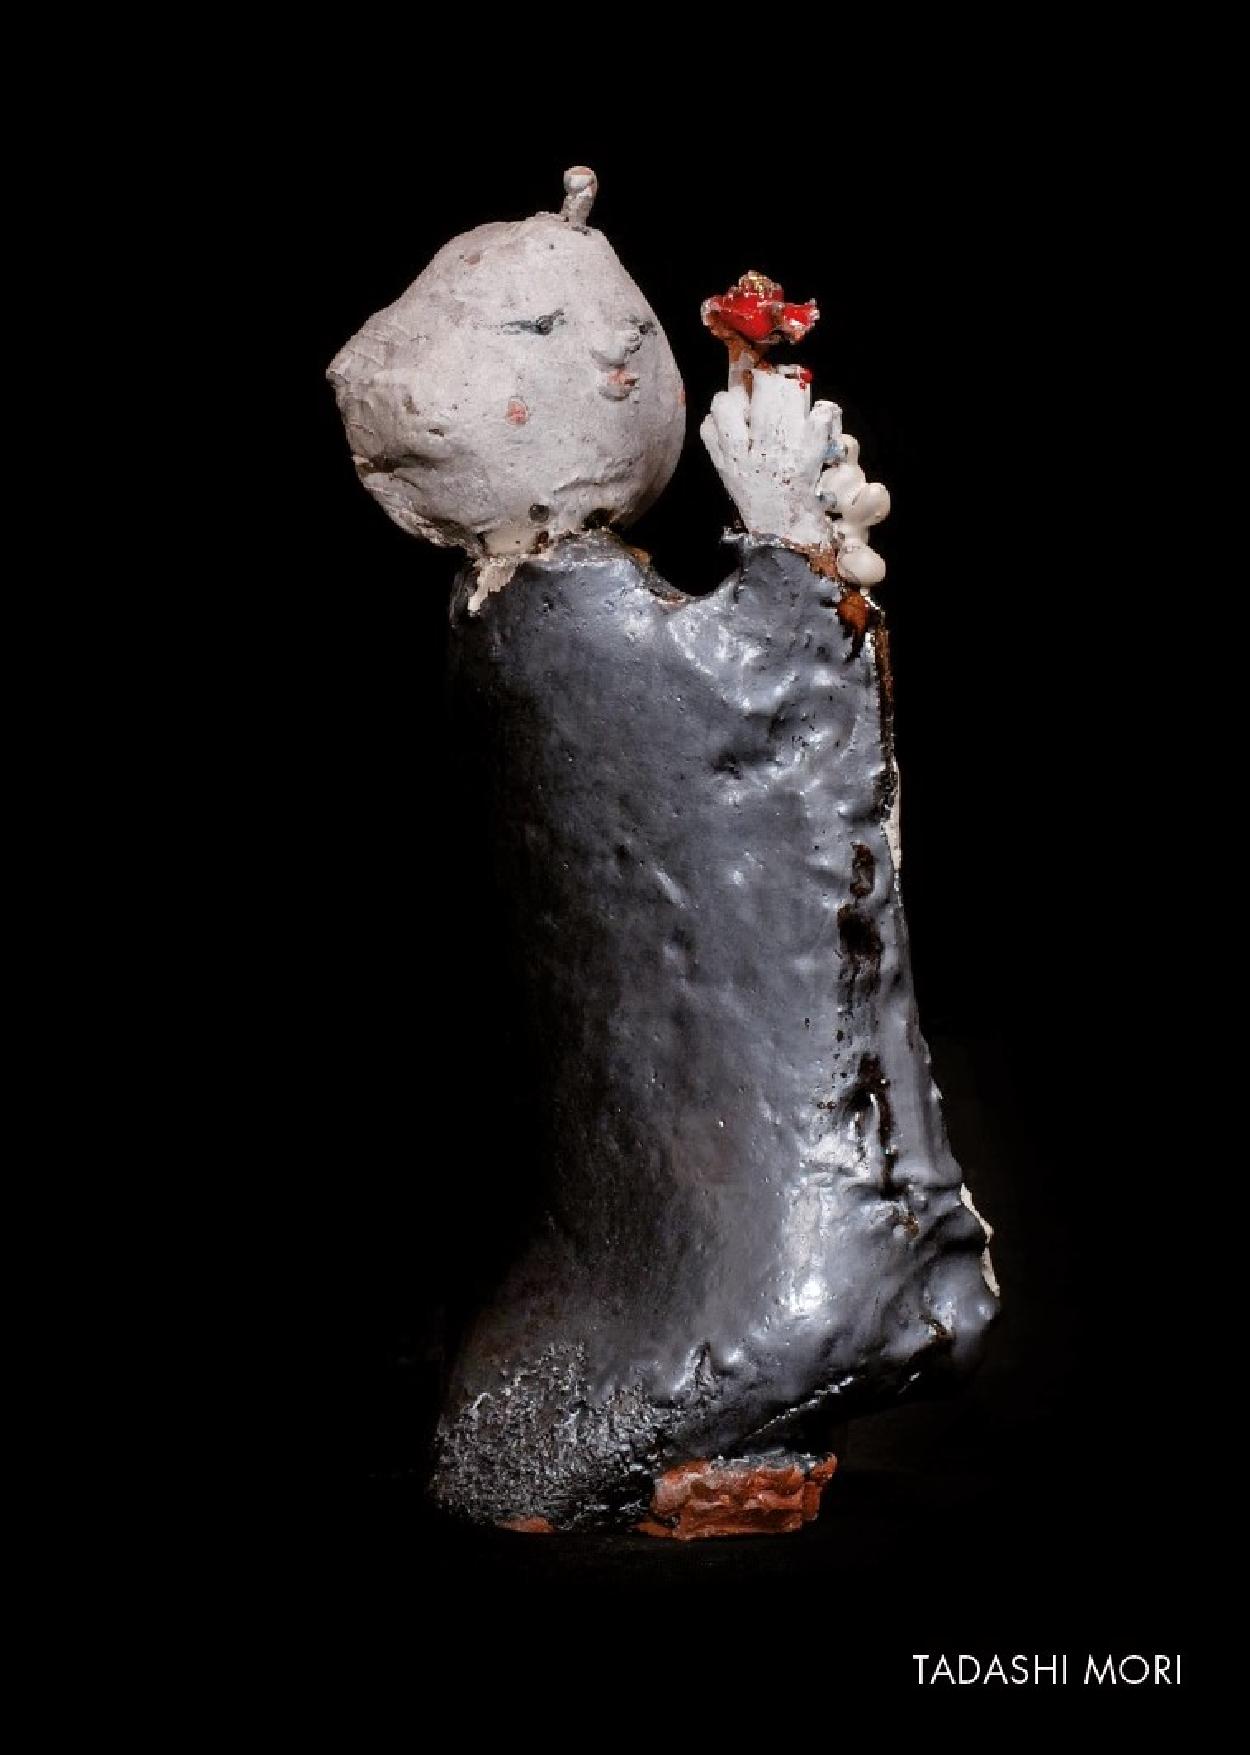 Tadashi Mori, Exposition des figures en céramiques, 9 october - 19 october 2014